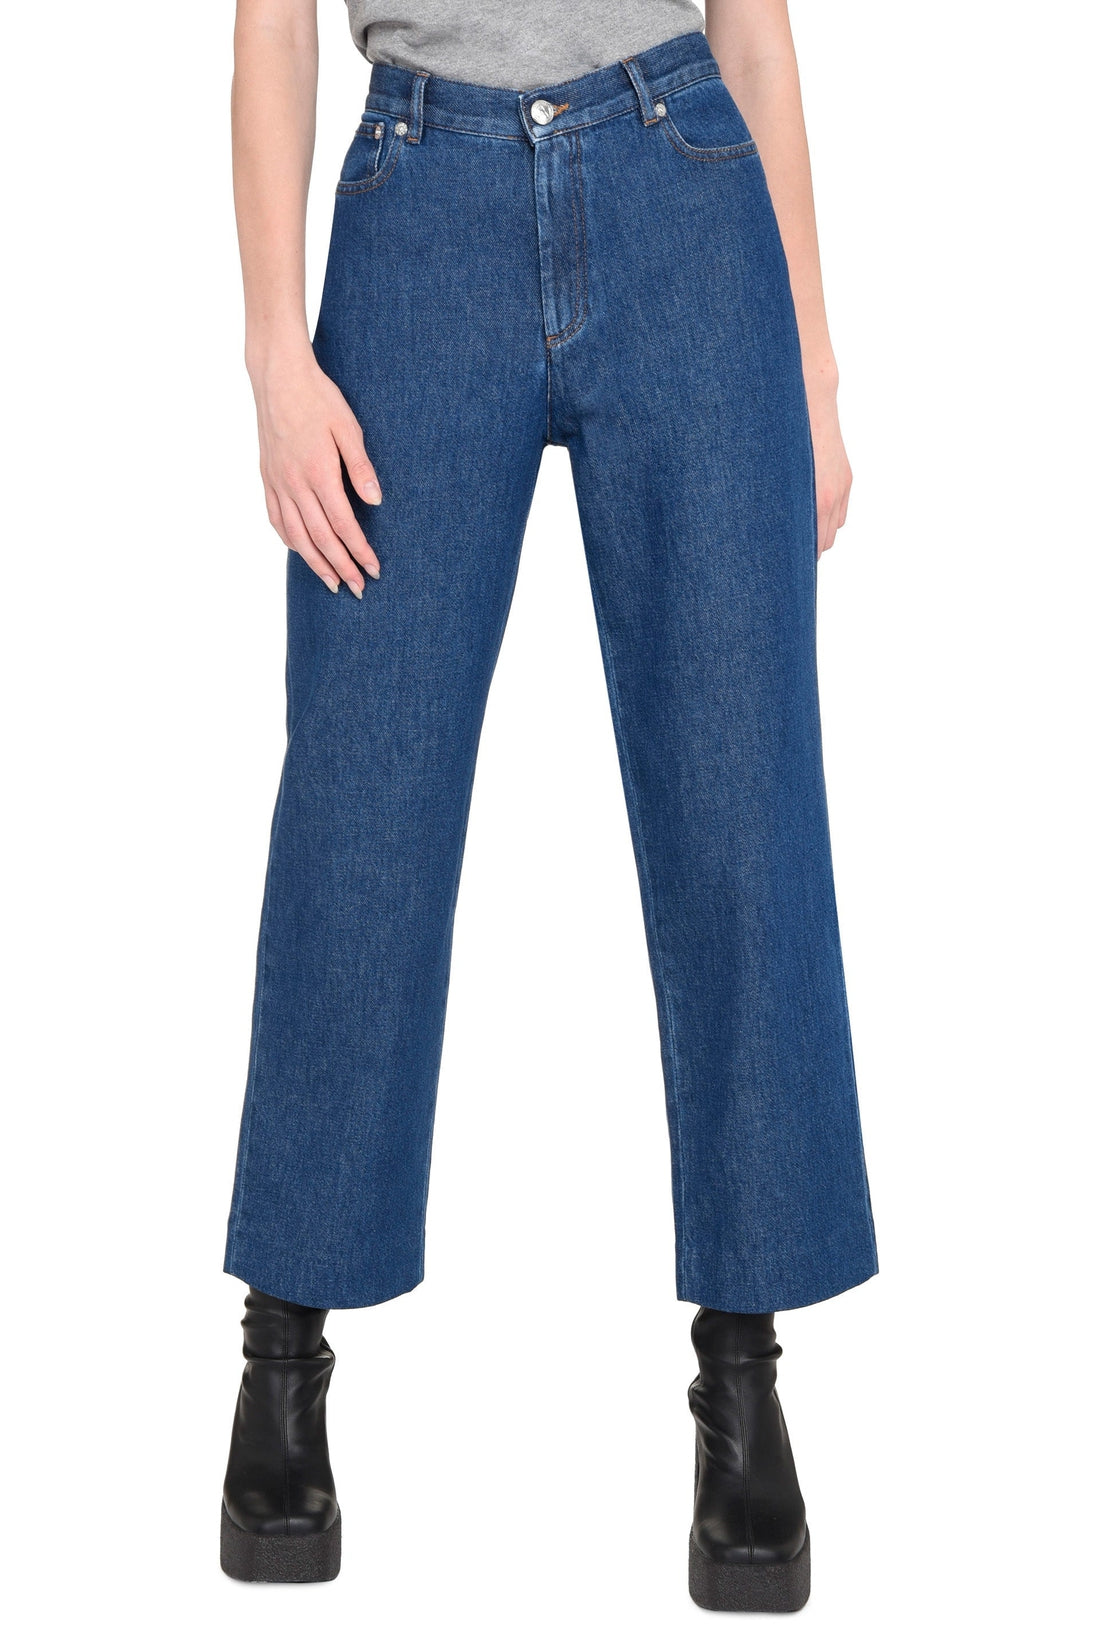 A.P.C.-OUTLET-SALE-New Sallor 5-pocket jeans-ARCHIVIST